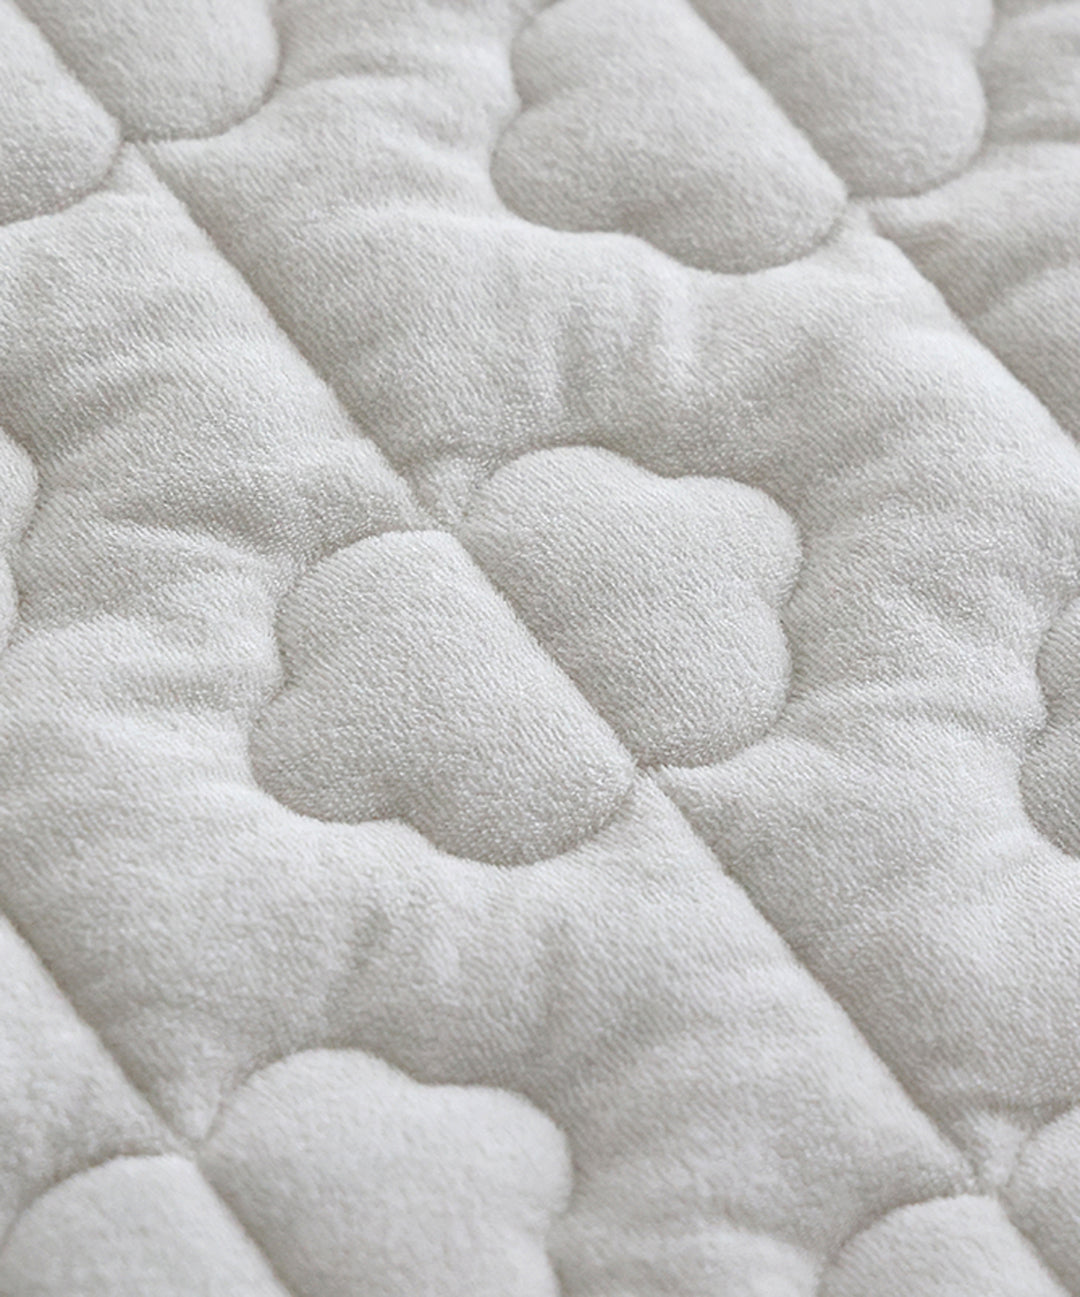 [รุ่นกันน้ำ] แผ่นรองนอนสำหรับเสื่อนอนอเนกประสงค์ (ผ้ากำมะหยี่) 120x120ซ.ม.